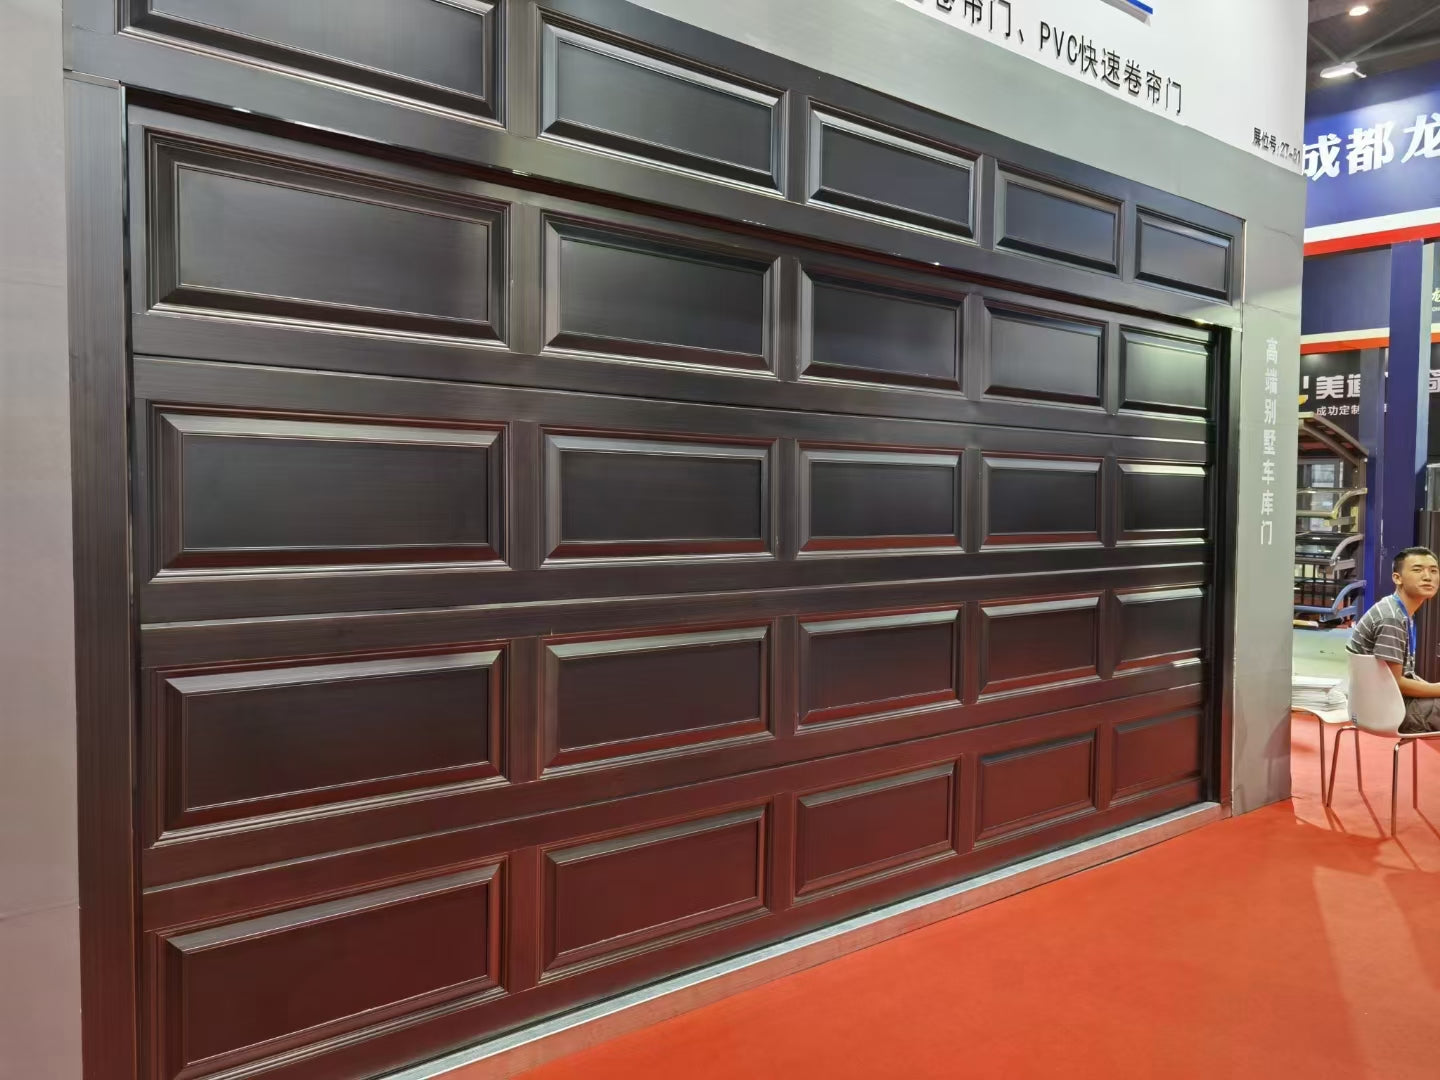 Warren 10x9 garage door garage door skins garage doors prices roller